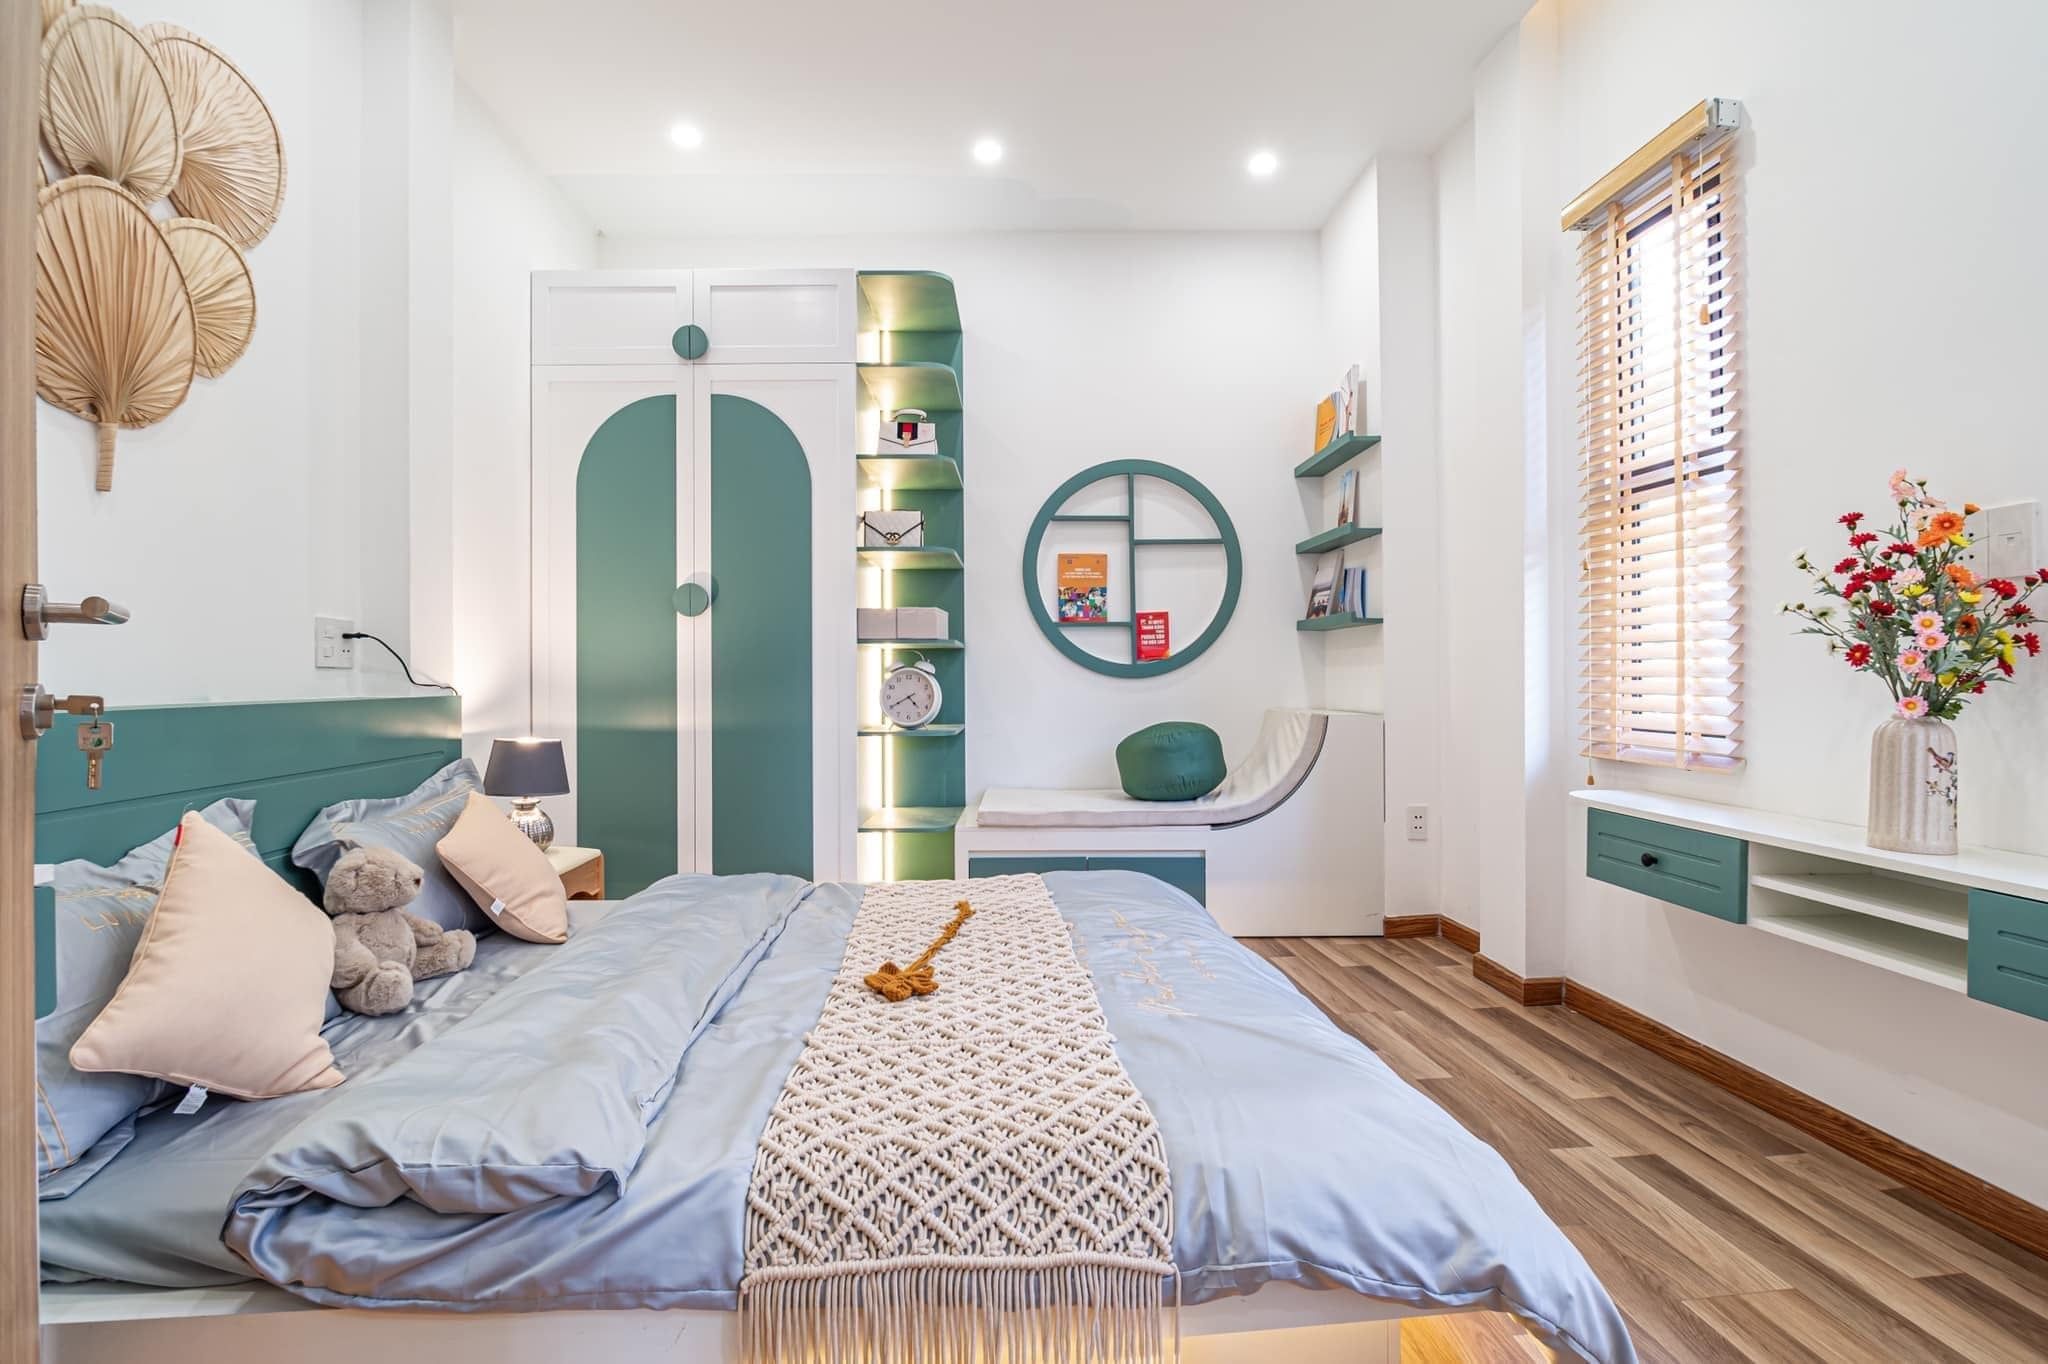 Phòng ngủ 2 tông màu trắng sử dụng nội thất màu xanh được thiết kế độc đáo với đầy đủ công năng từ giường, tủ quần áo